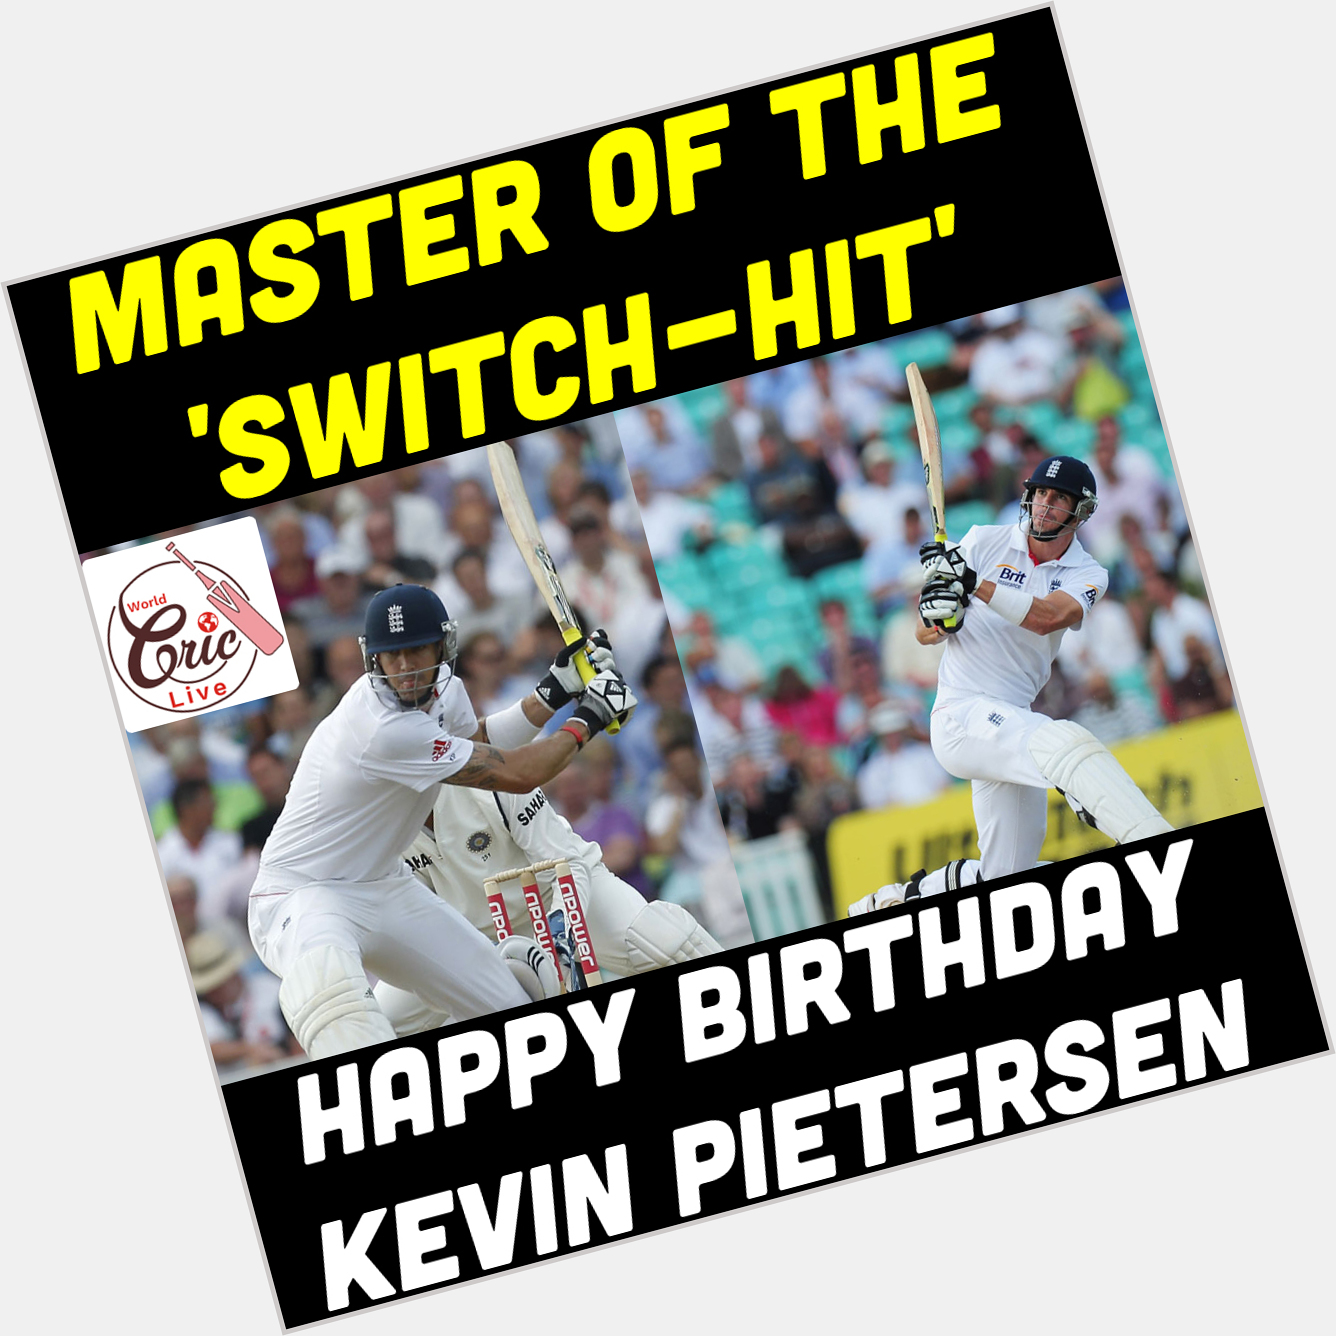 Happy Birthday Kevin Pietersen  